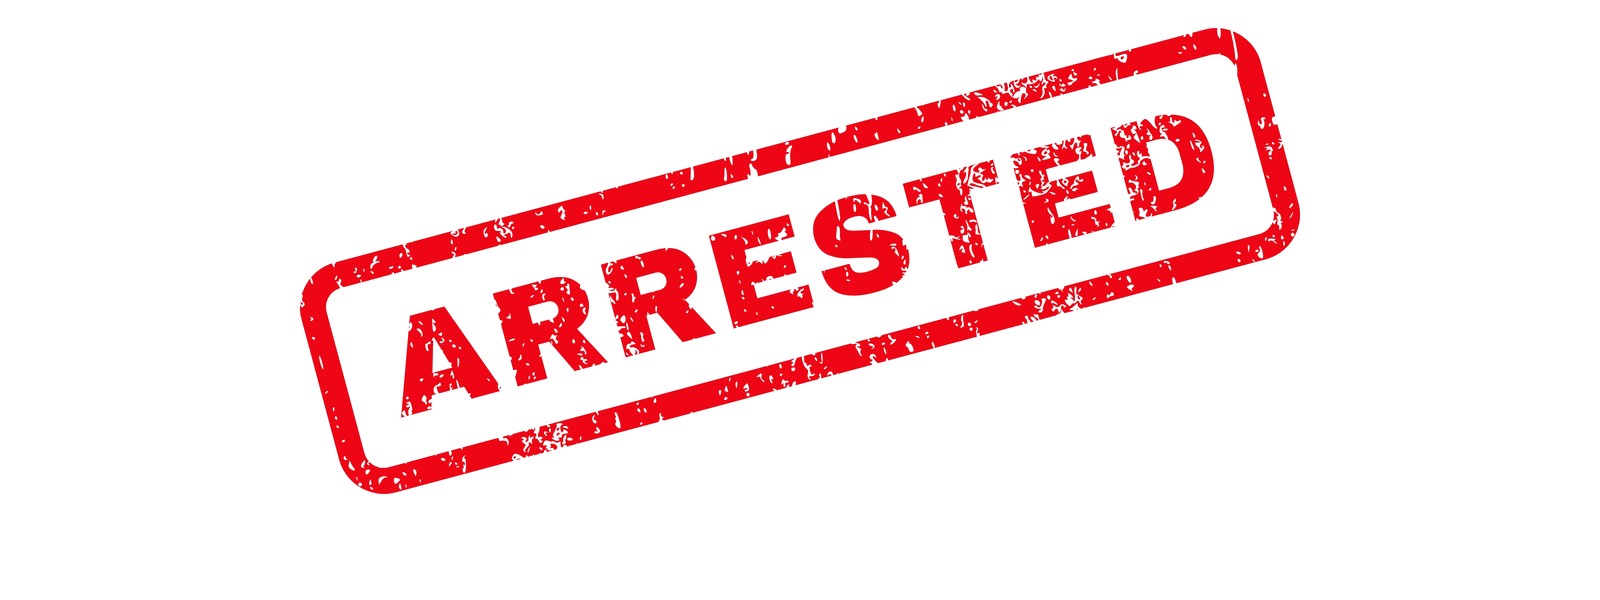 05 arrested for posting pornographic images & videos online